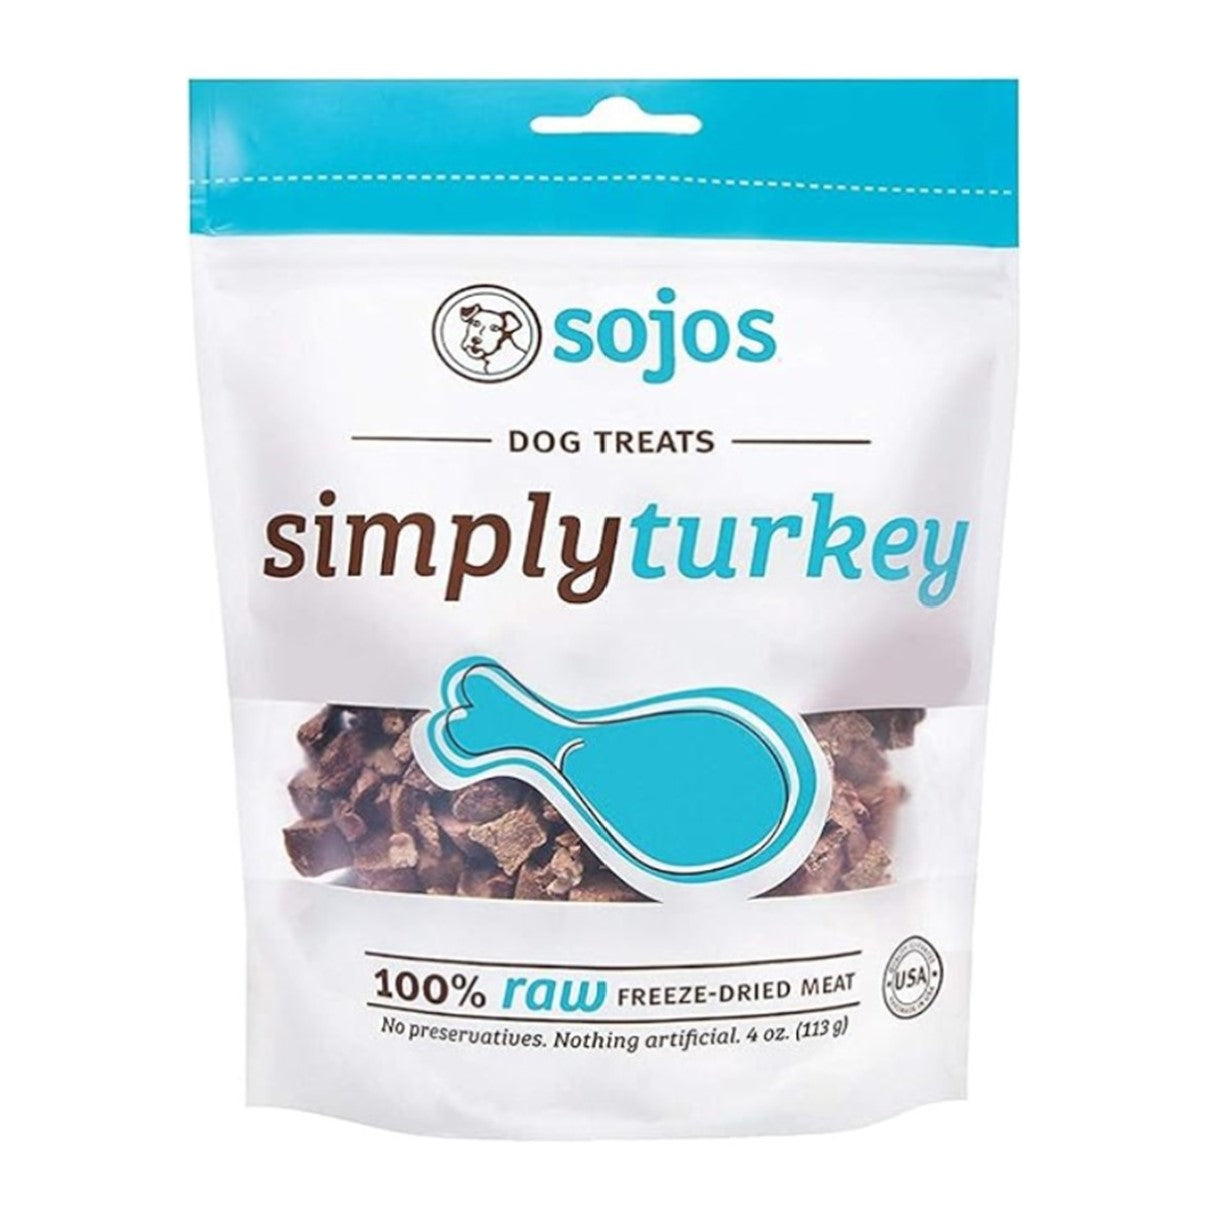 Sojos Simply Turkey 4oz